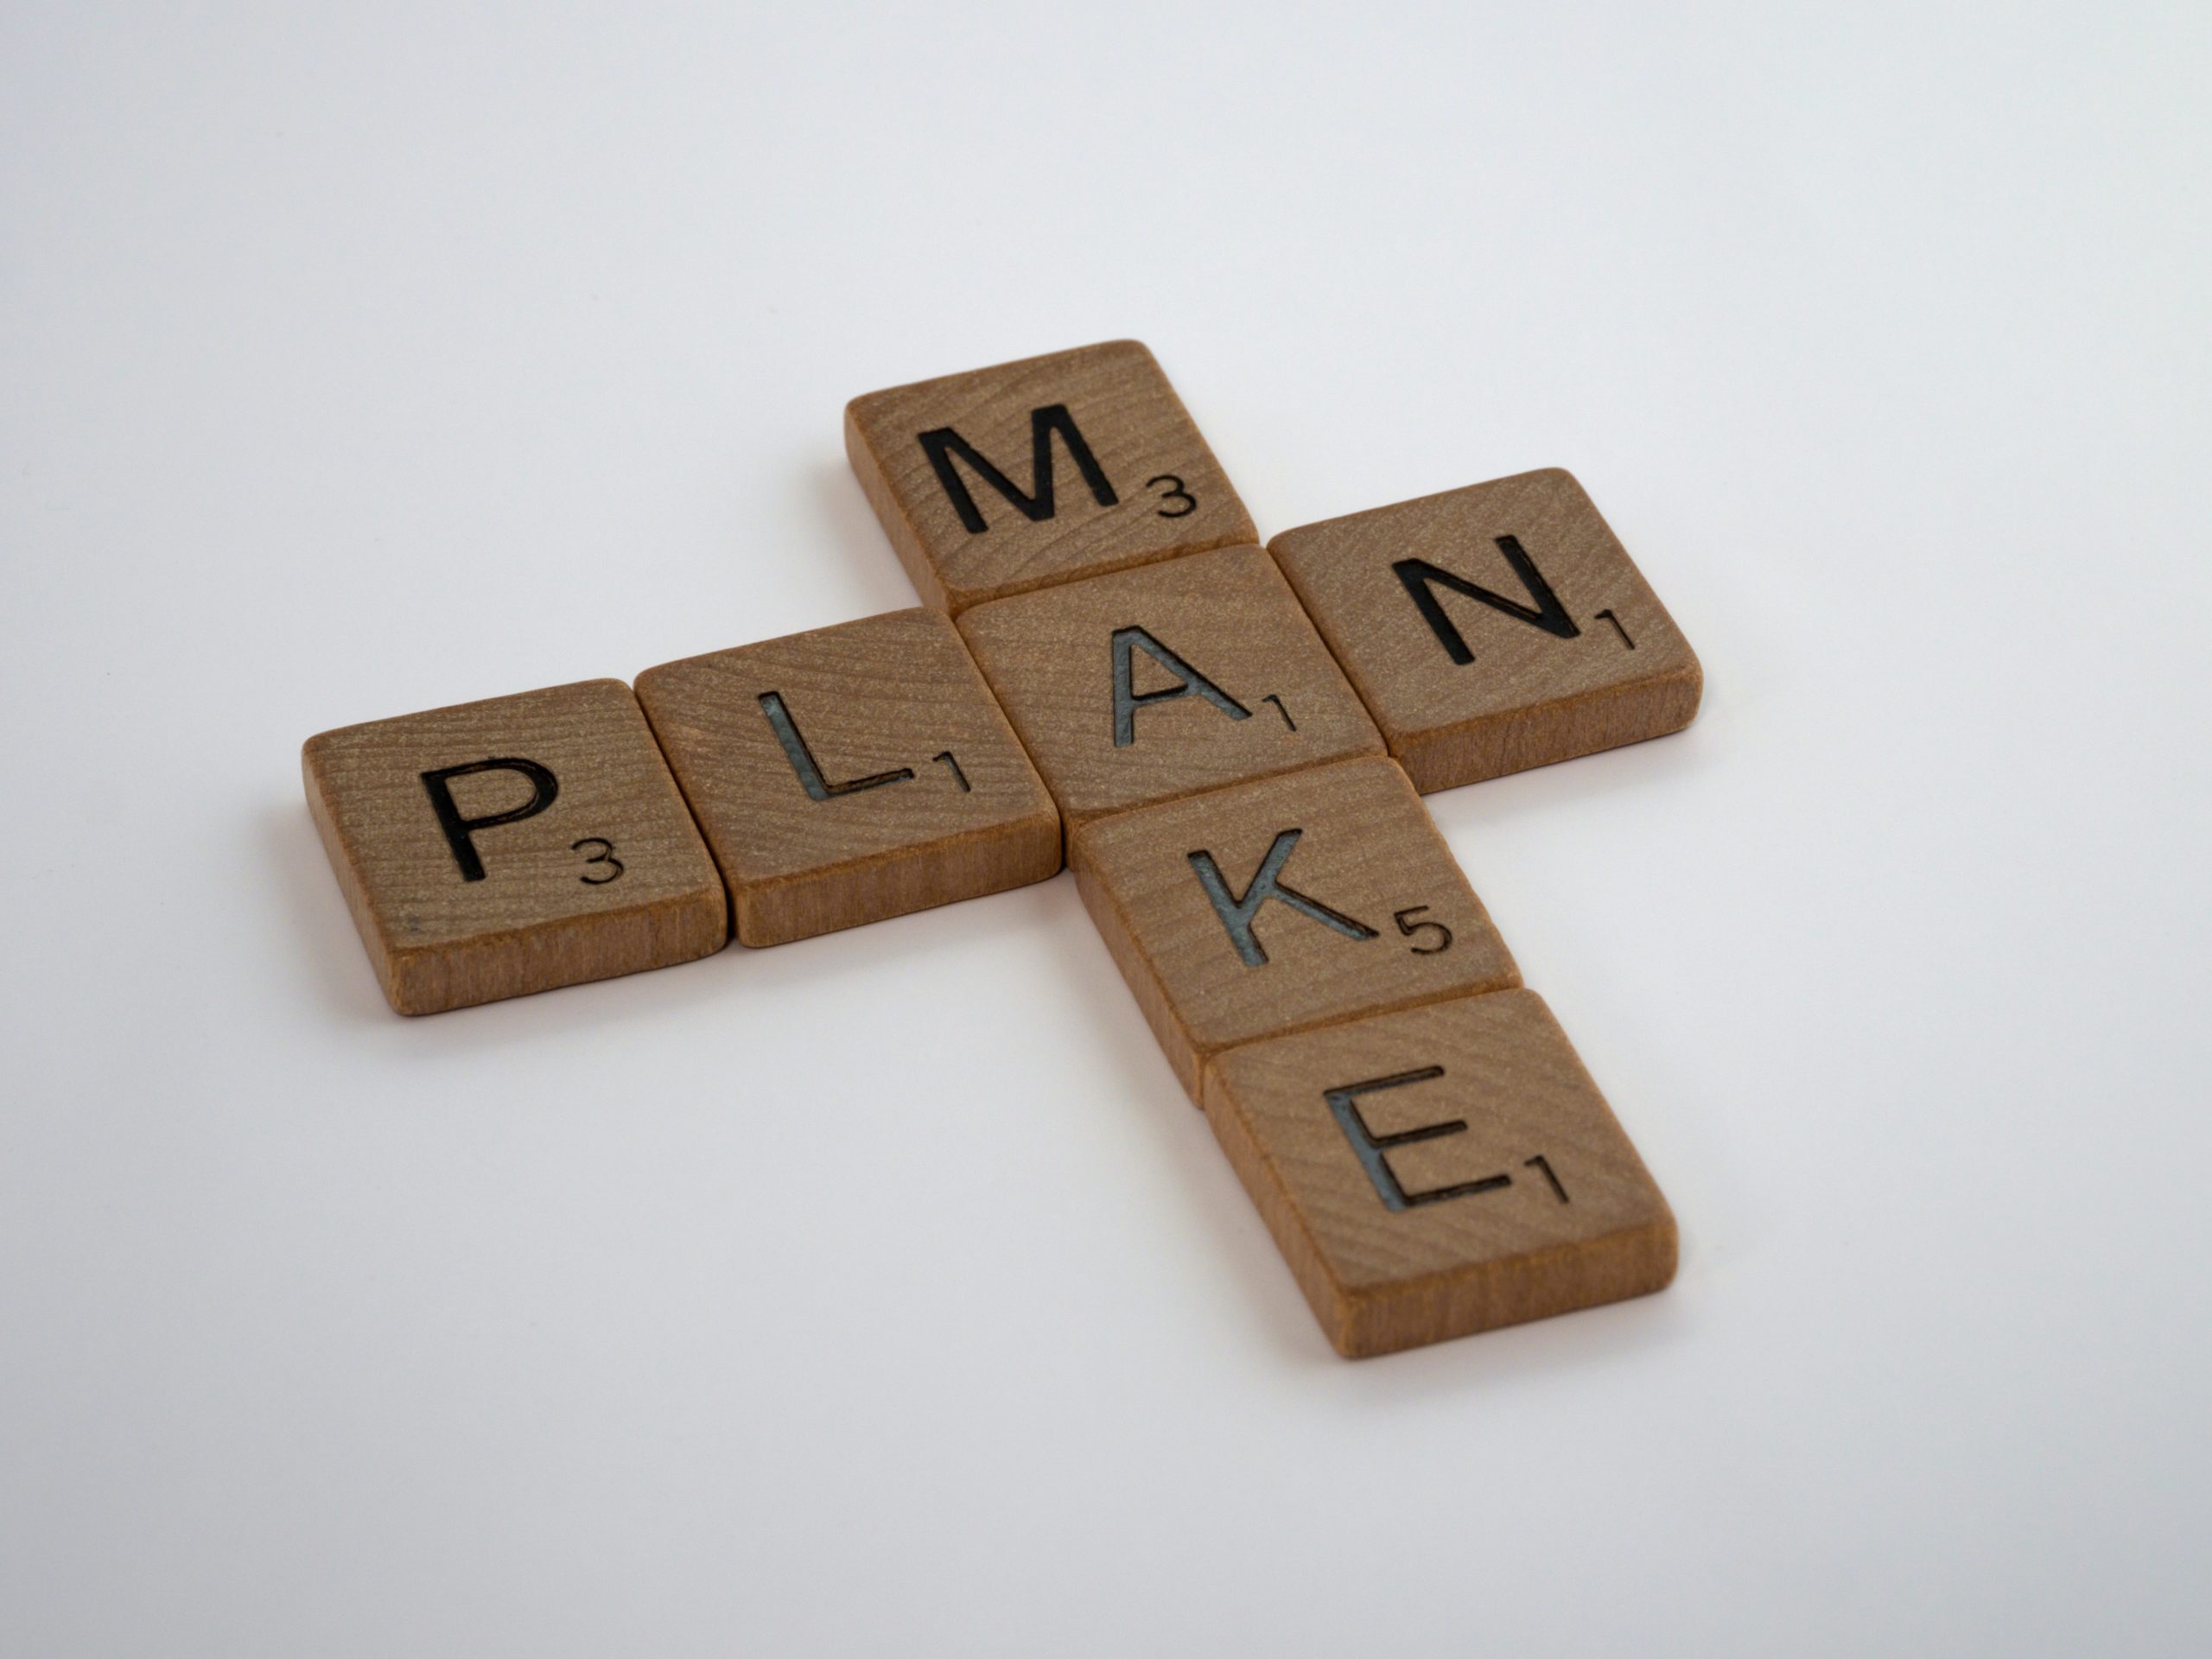 Scrabble tiles spell "Make Plan"